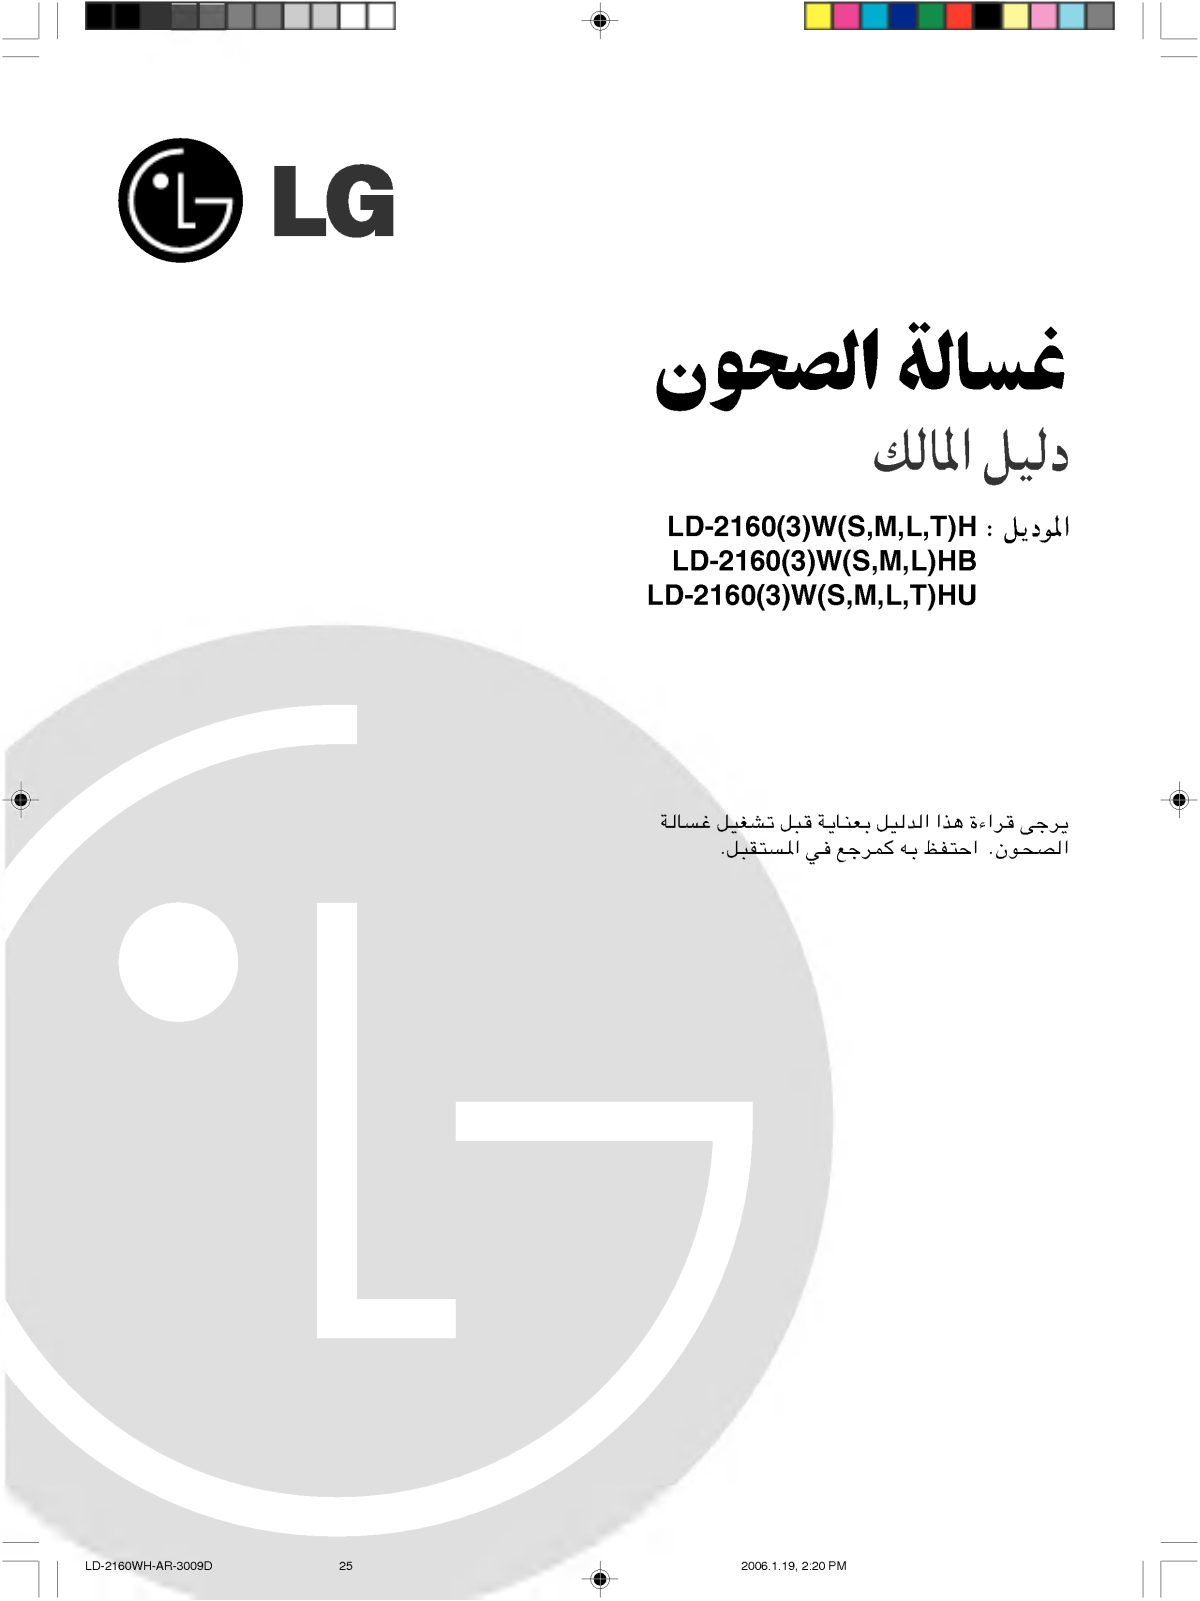 LG LD-2163SH Owner's Manual